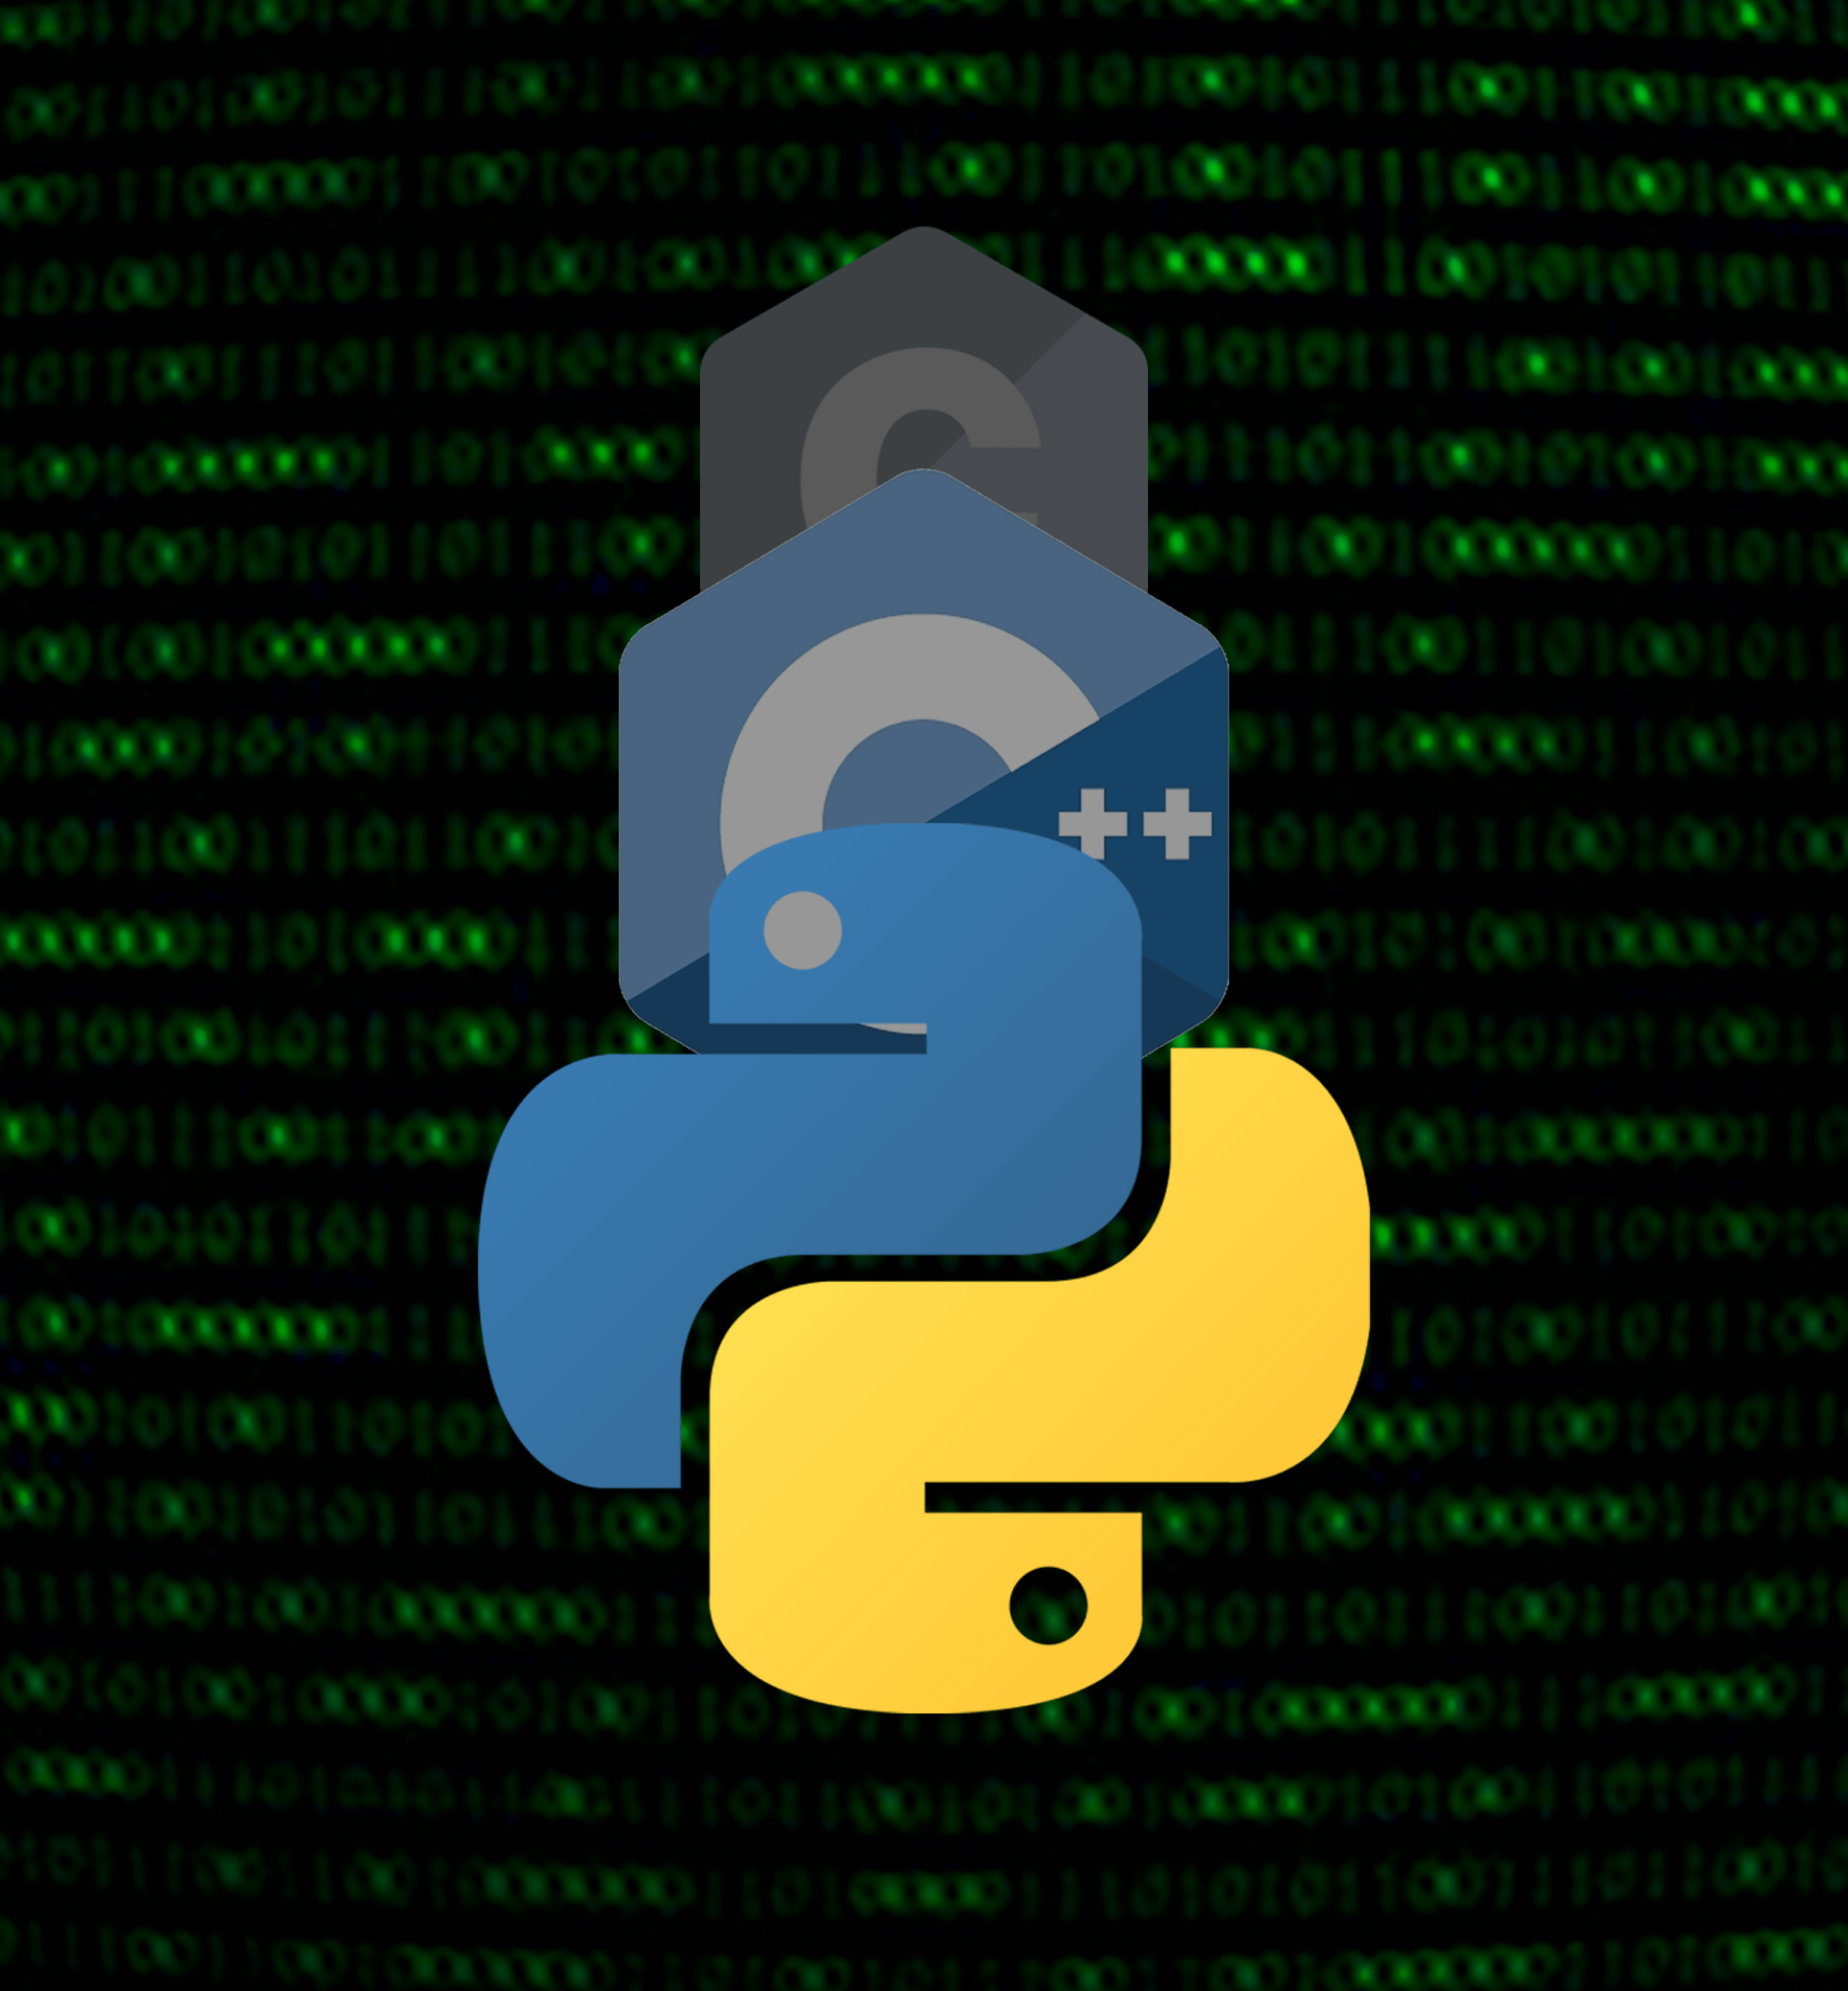 Spacy python. Программирование фон. Python фон. Python обои. Обои в стиле Python.